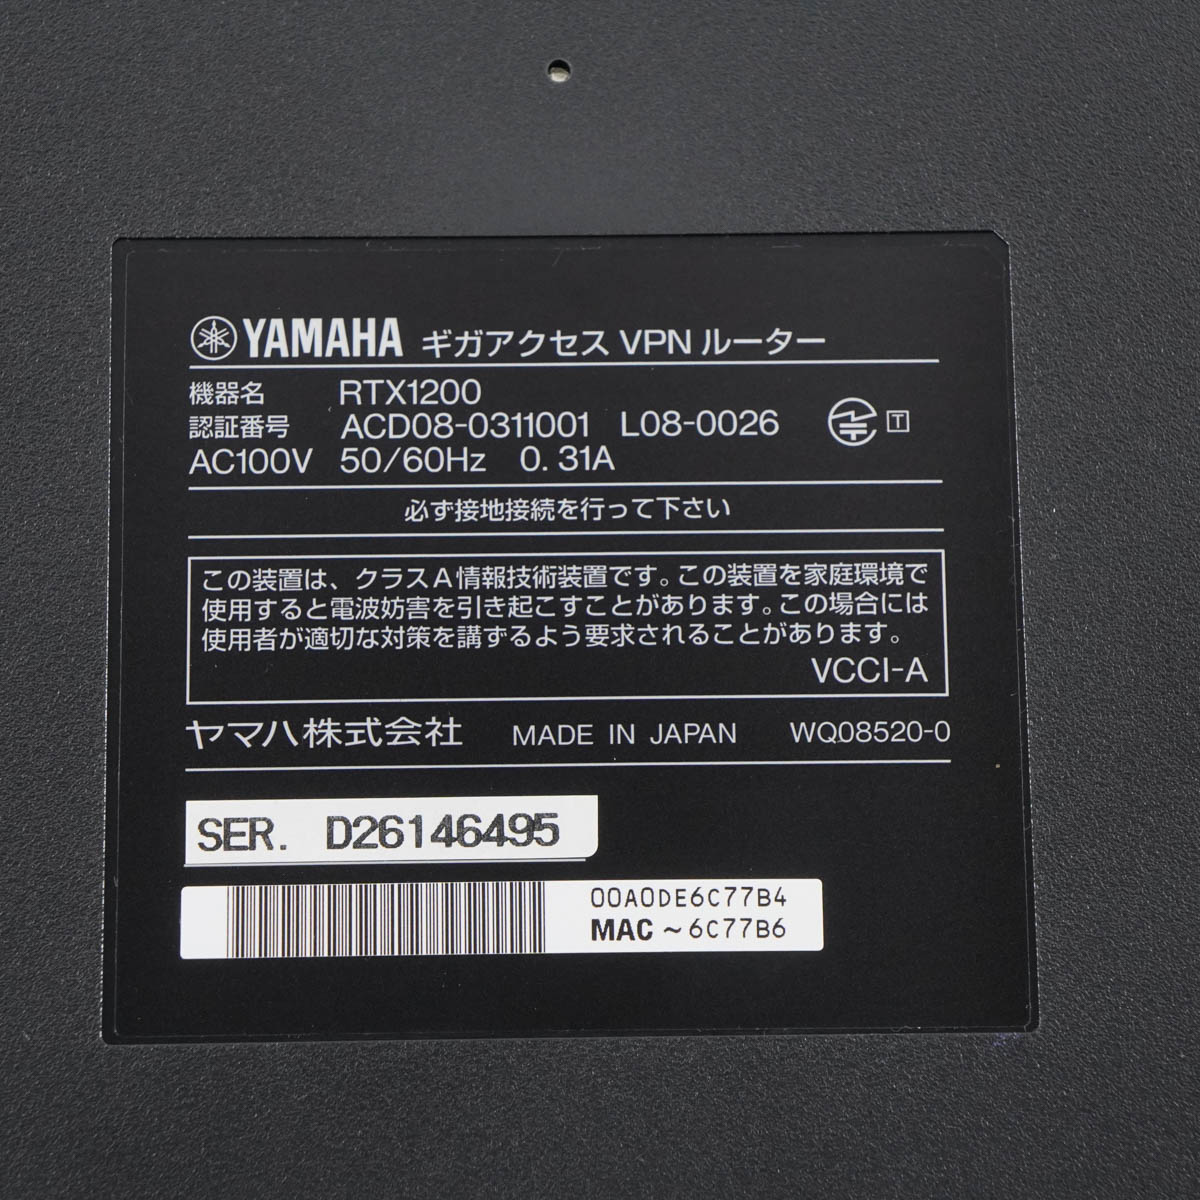 PG]USED 8日保証 初期化済 YAMAHA RTX1200 ギガアクセスVPNルーター 